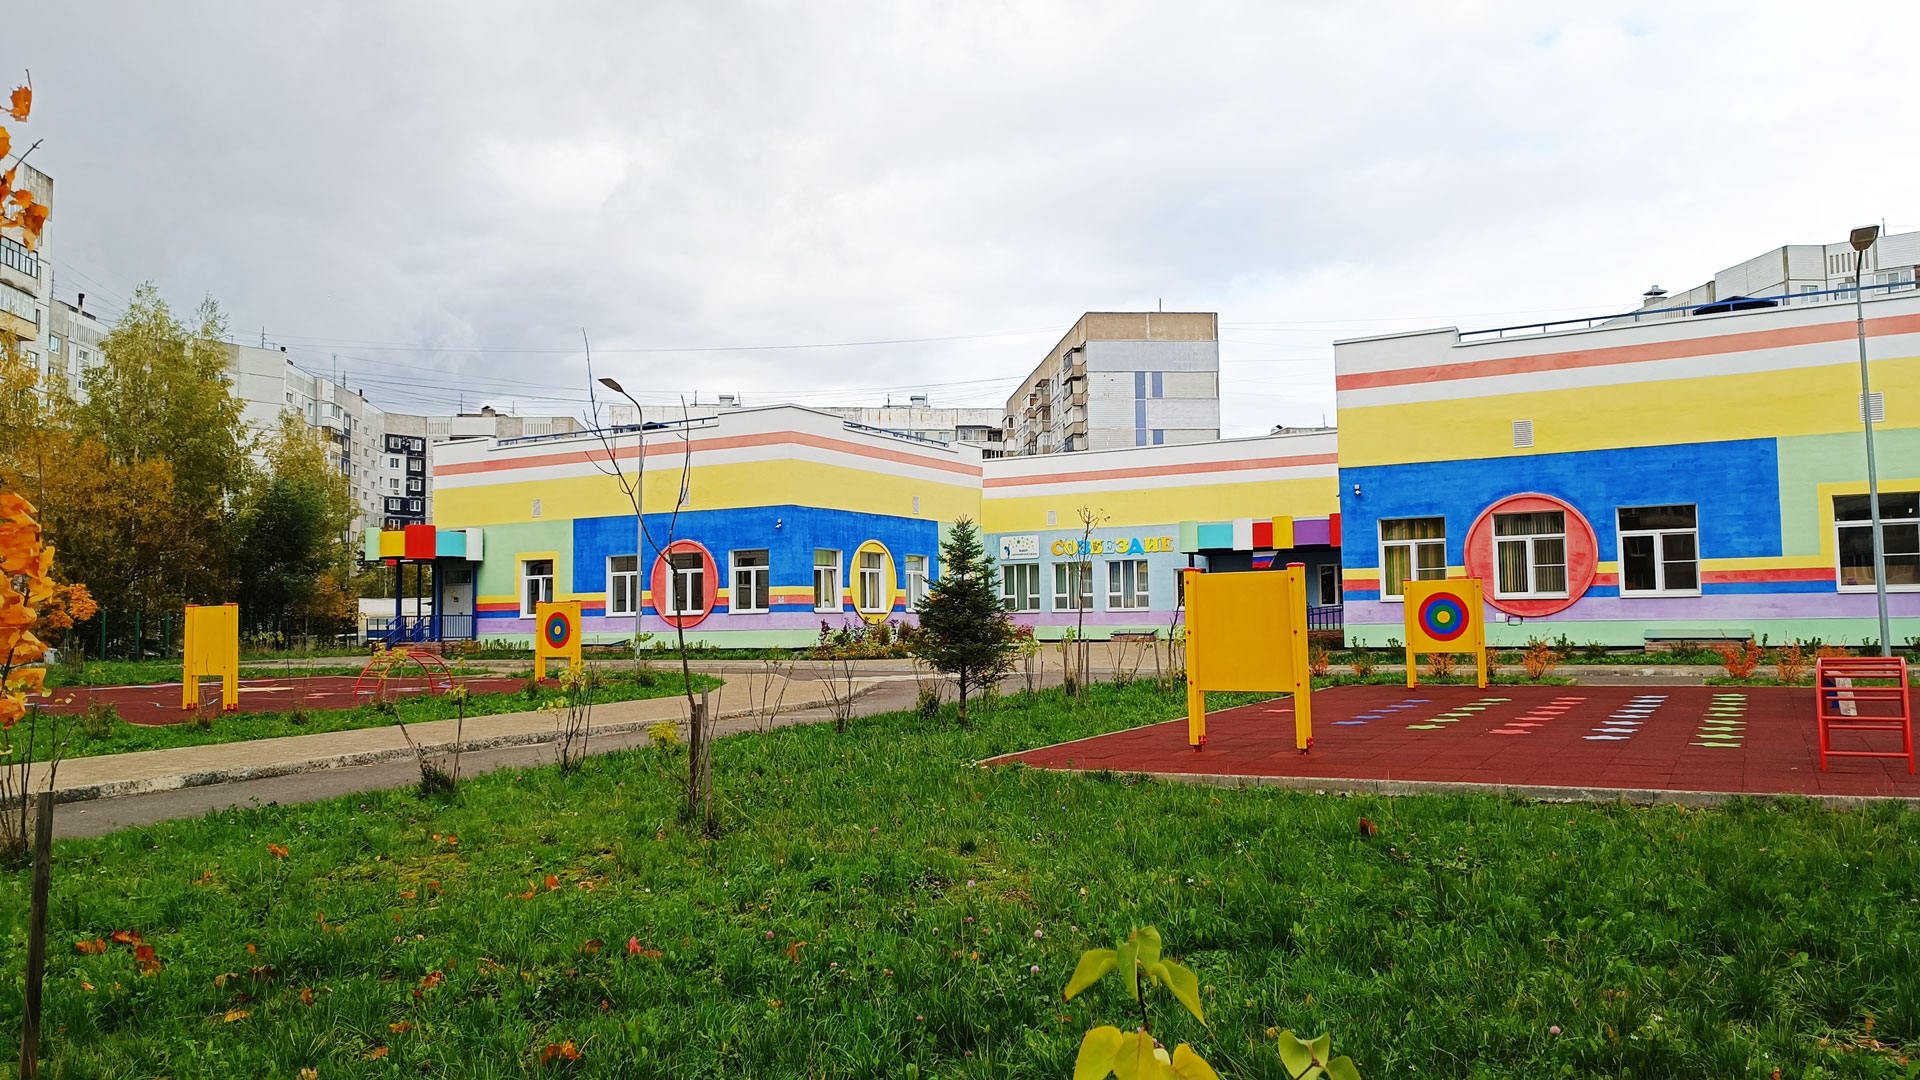 Детский сад 111 Ярославль: общий вид здания.